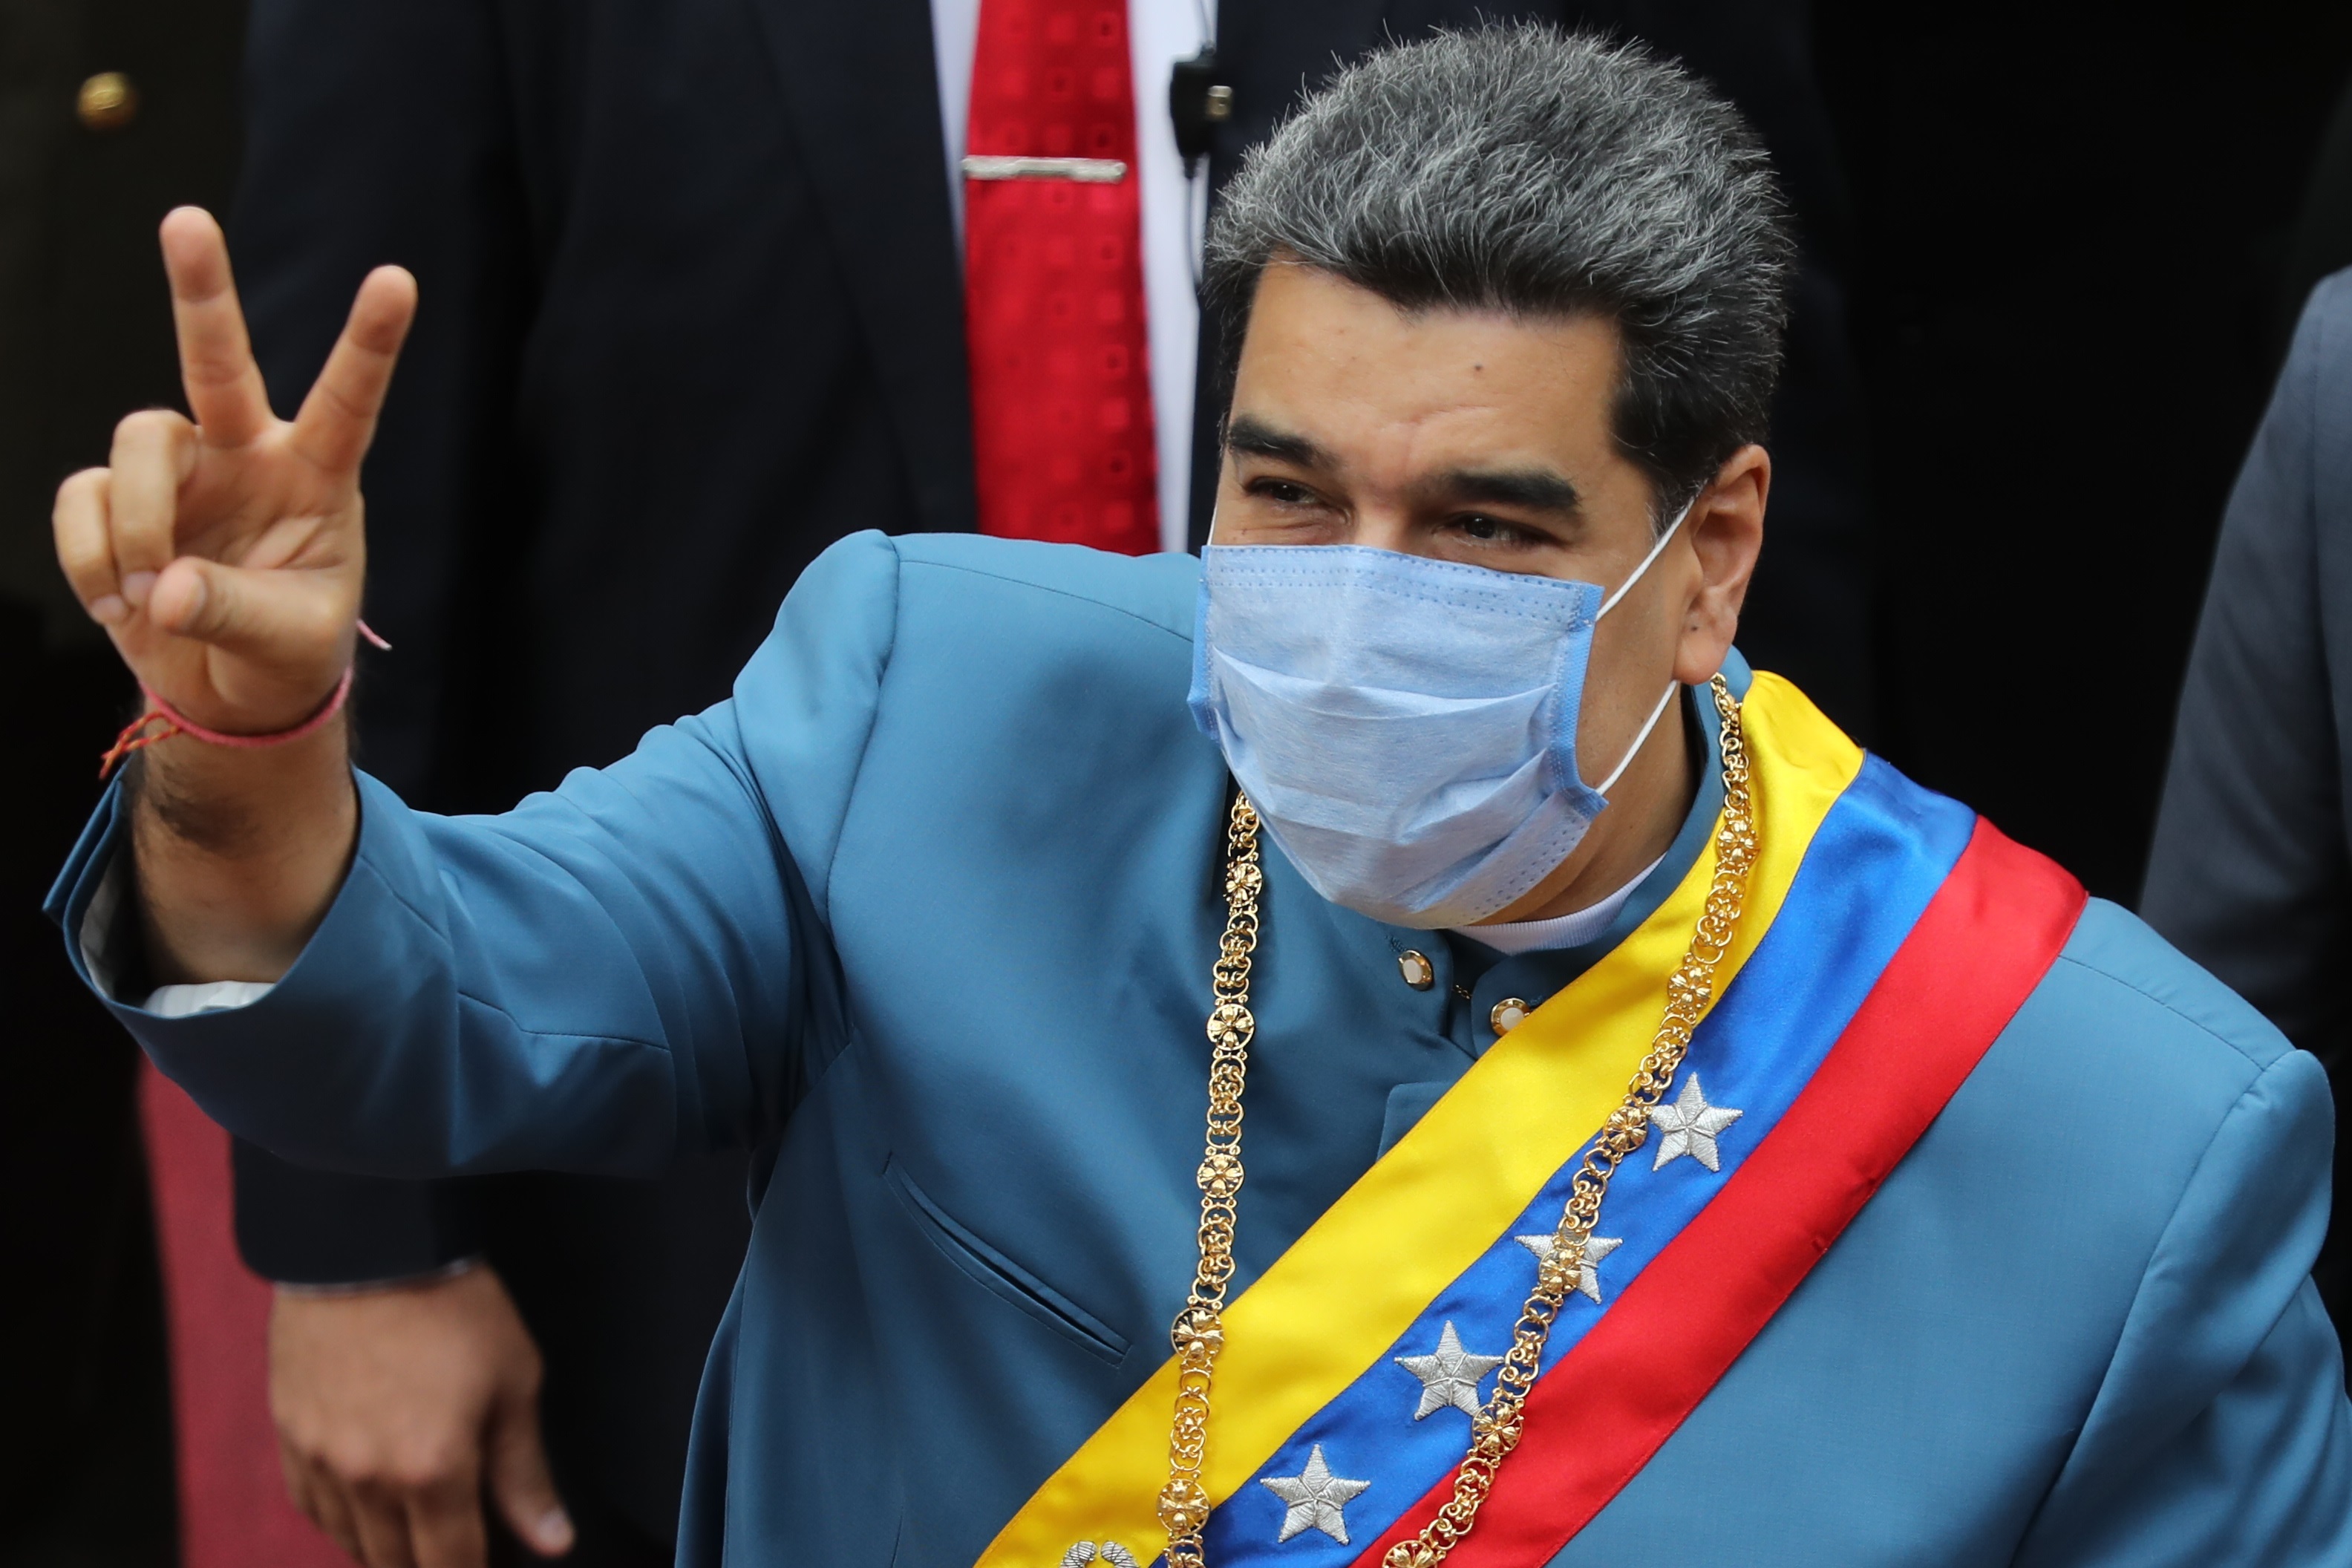 Maduro arrancó su #MemoriayCuento alabando su absurda y engañosa gestión contra el Covid-19